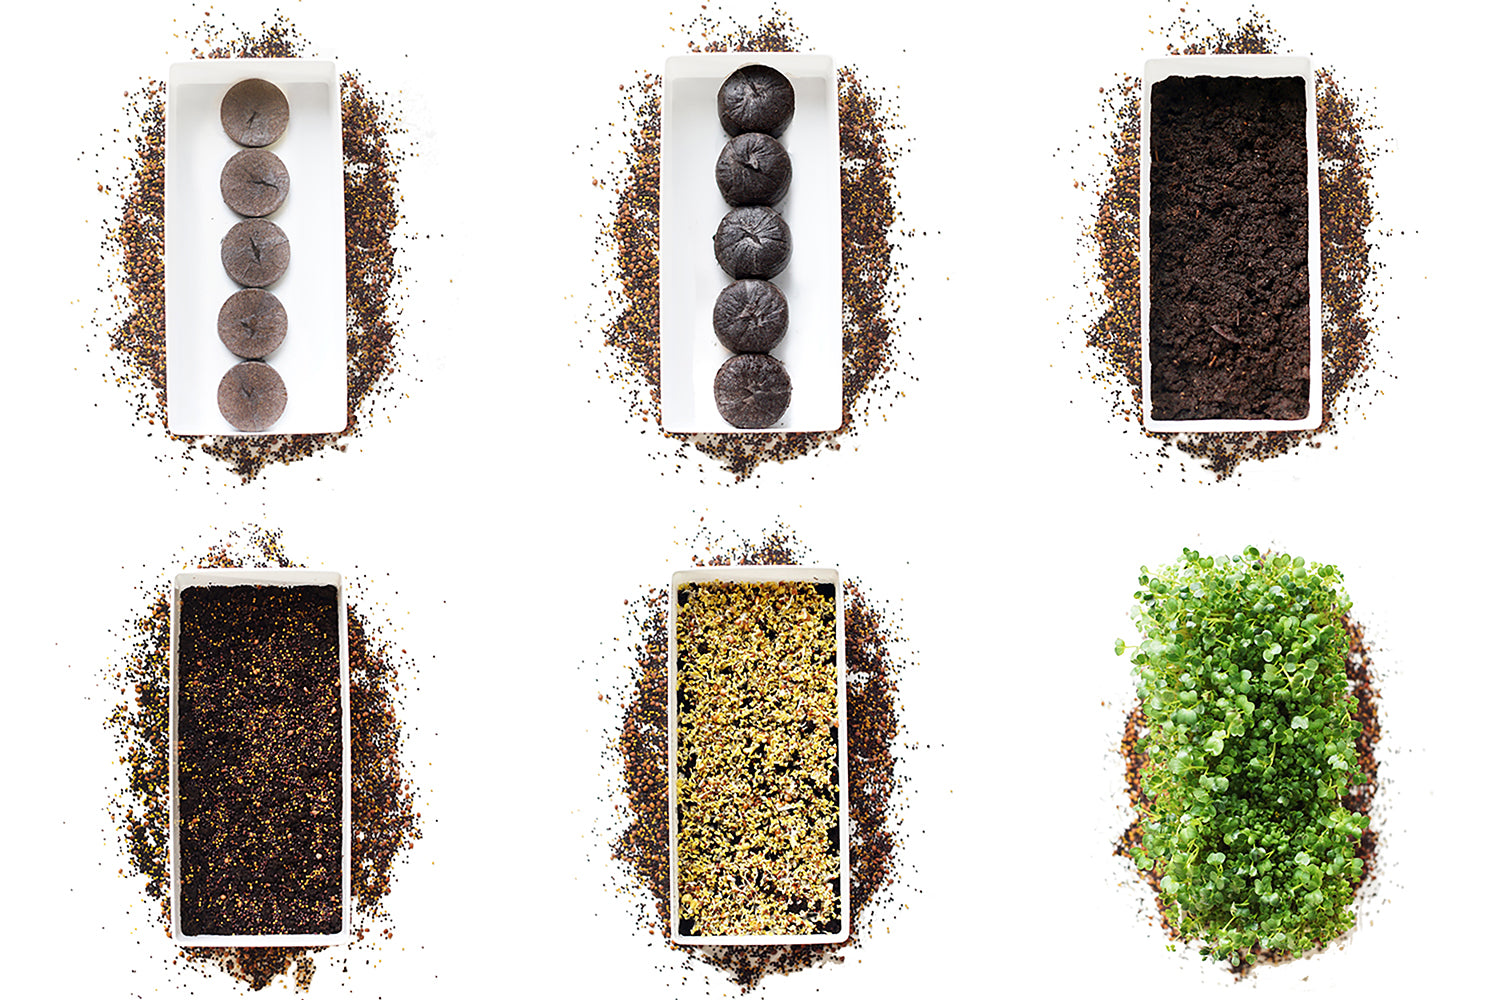 Microgreens Starter Kit 3-Pack - Broccoli Brassica, Microgreen Salad Mix & Wheatgrass - Urban Minimalist